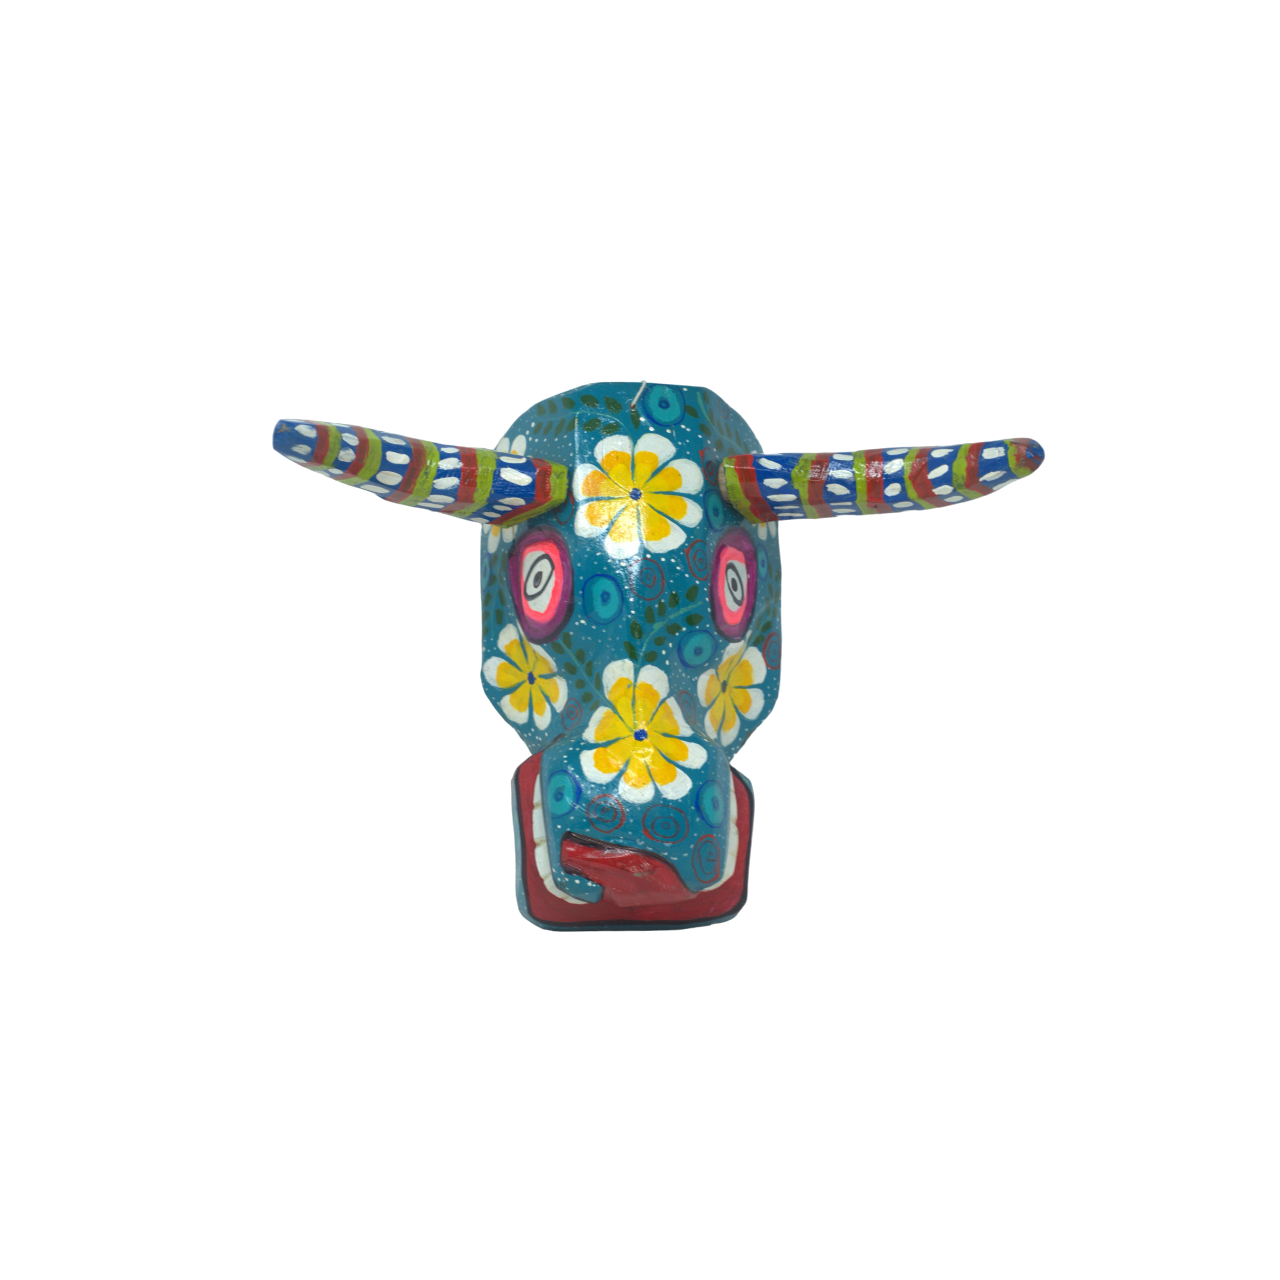 Handcarved Guatemalan Folk Art, Handcarved Guatemalan Wall Mask, Traditional Guatemalan Mask, Traditional Flower Bull Mask, Maximalist Home Decor, Wooden Bull Head Mask, Yellow Flower Bull Mask, Colorful Bull Mask